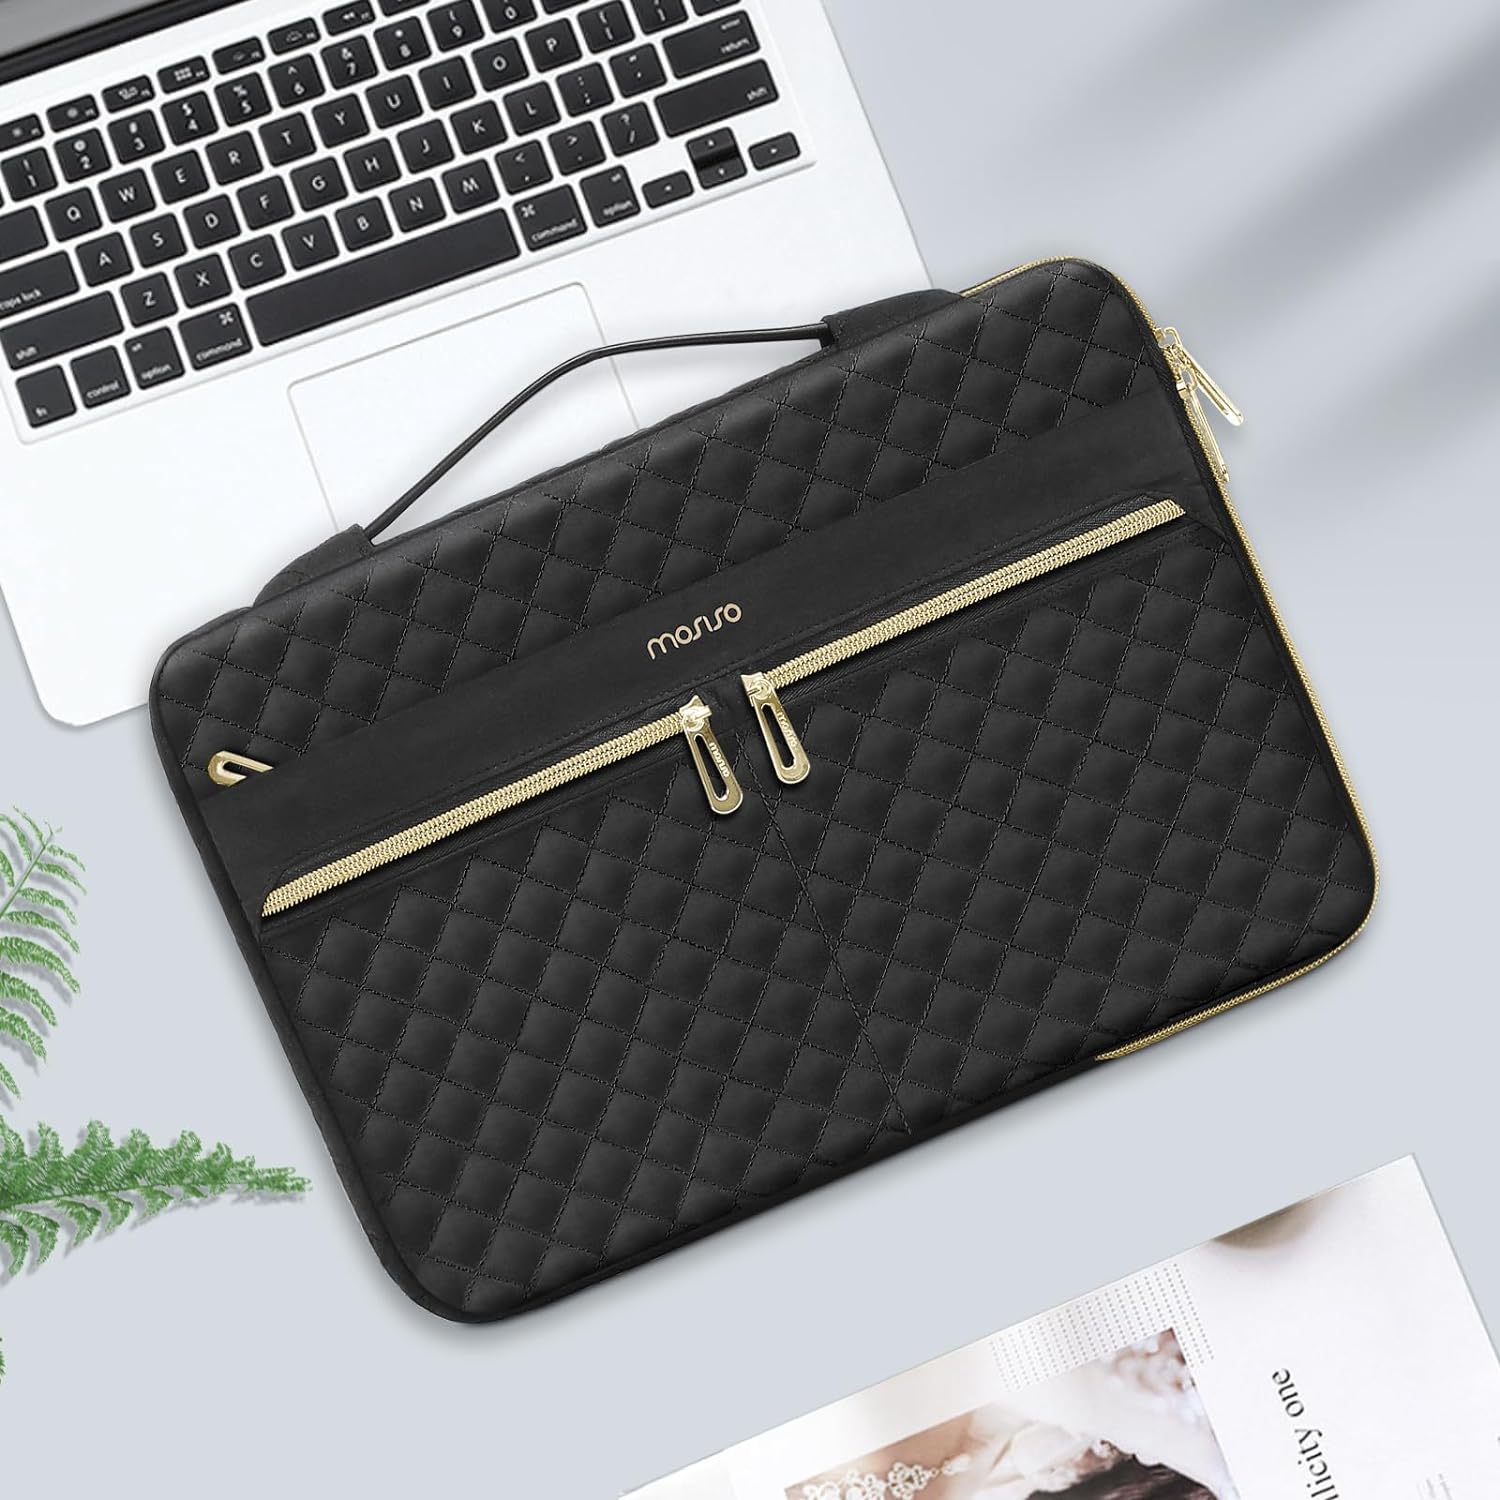 Maynos For MacBook 13.3” Laptop Sleeve Case Carry Bag India | Ubuy